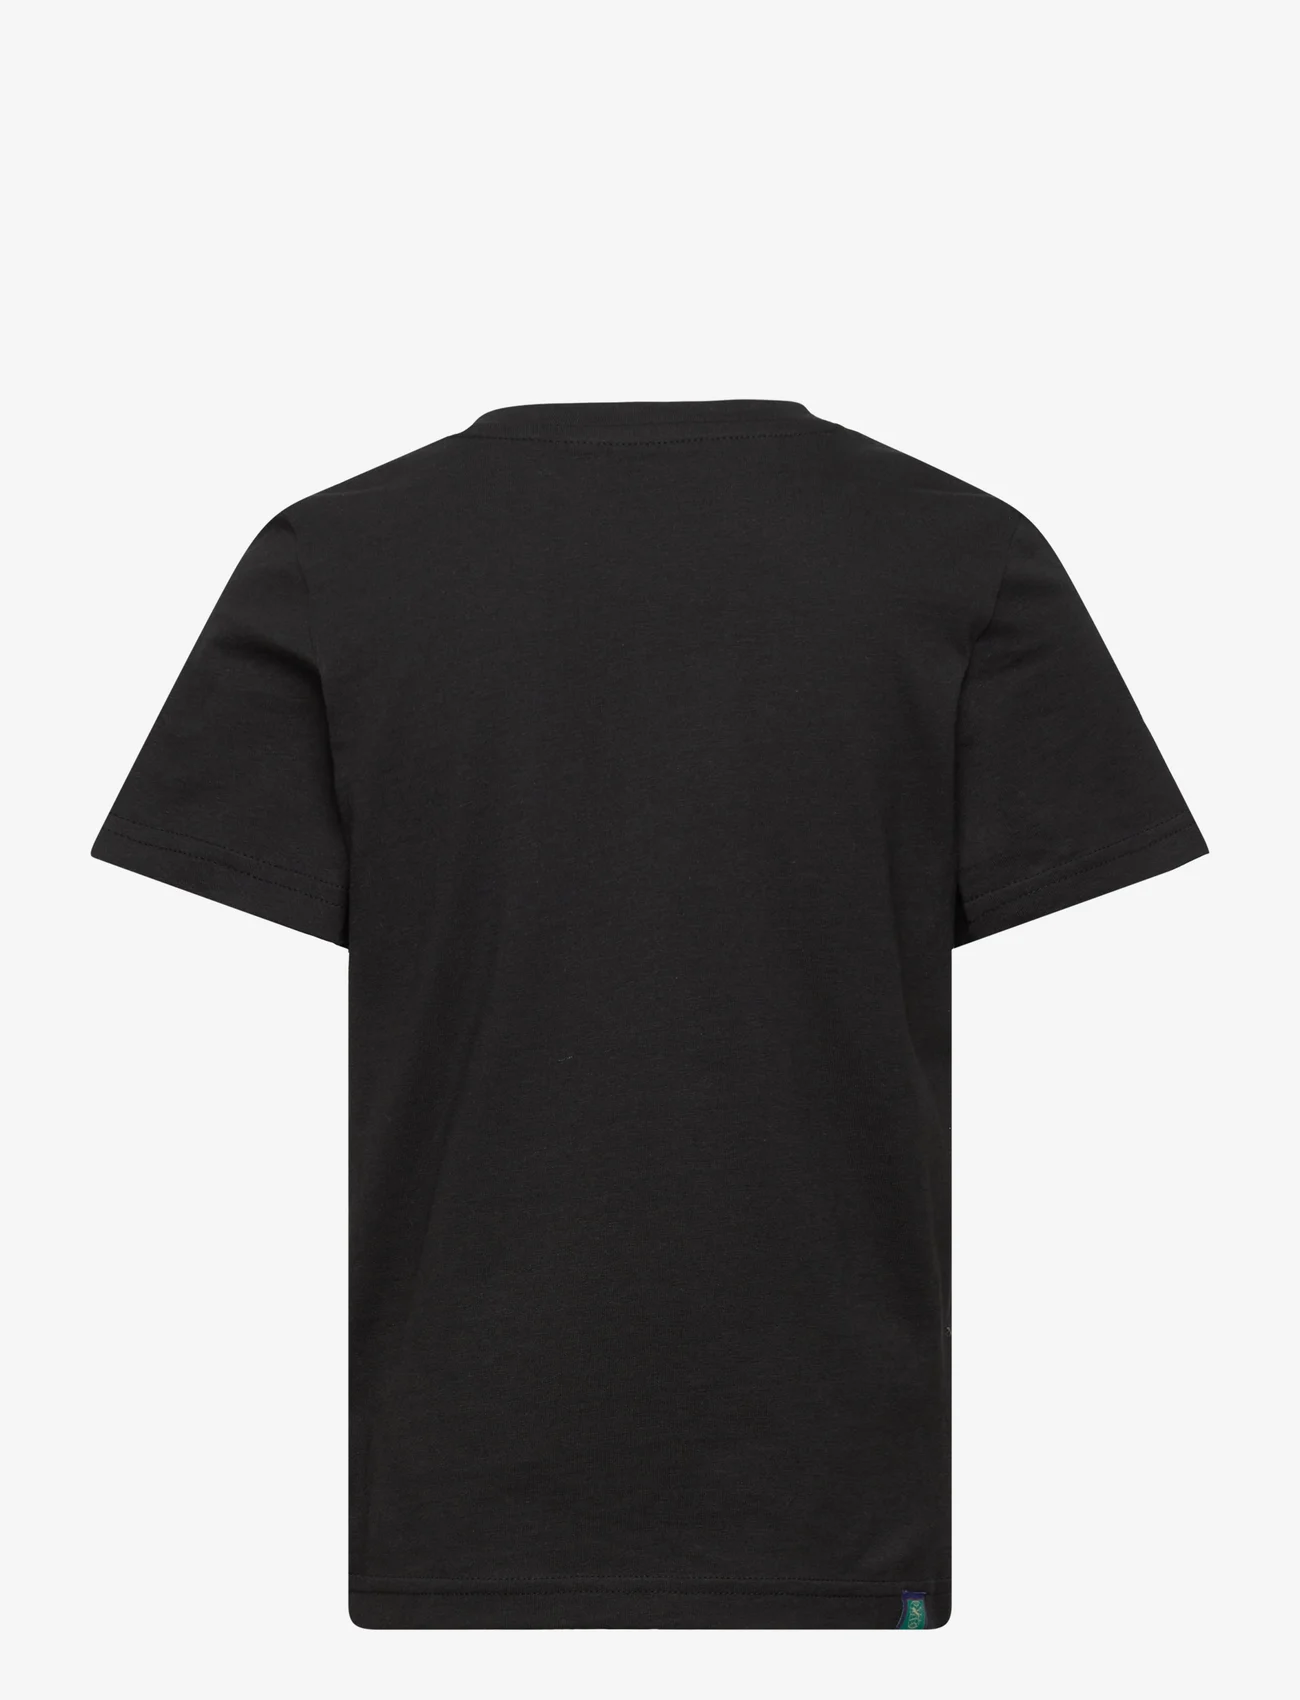 PUMA - READY SET BETTER Tee B - kortærmede t-shirts - puma black - 1